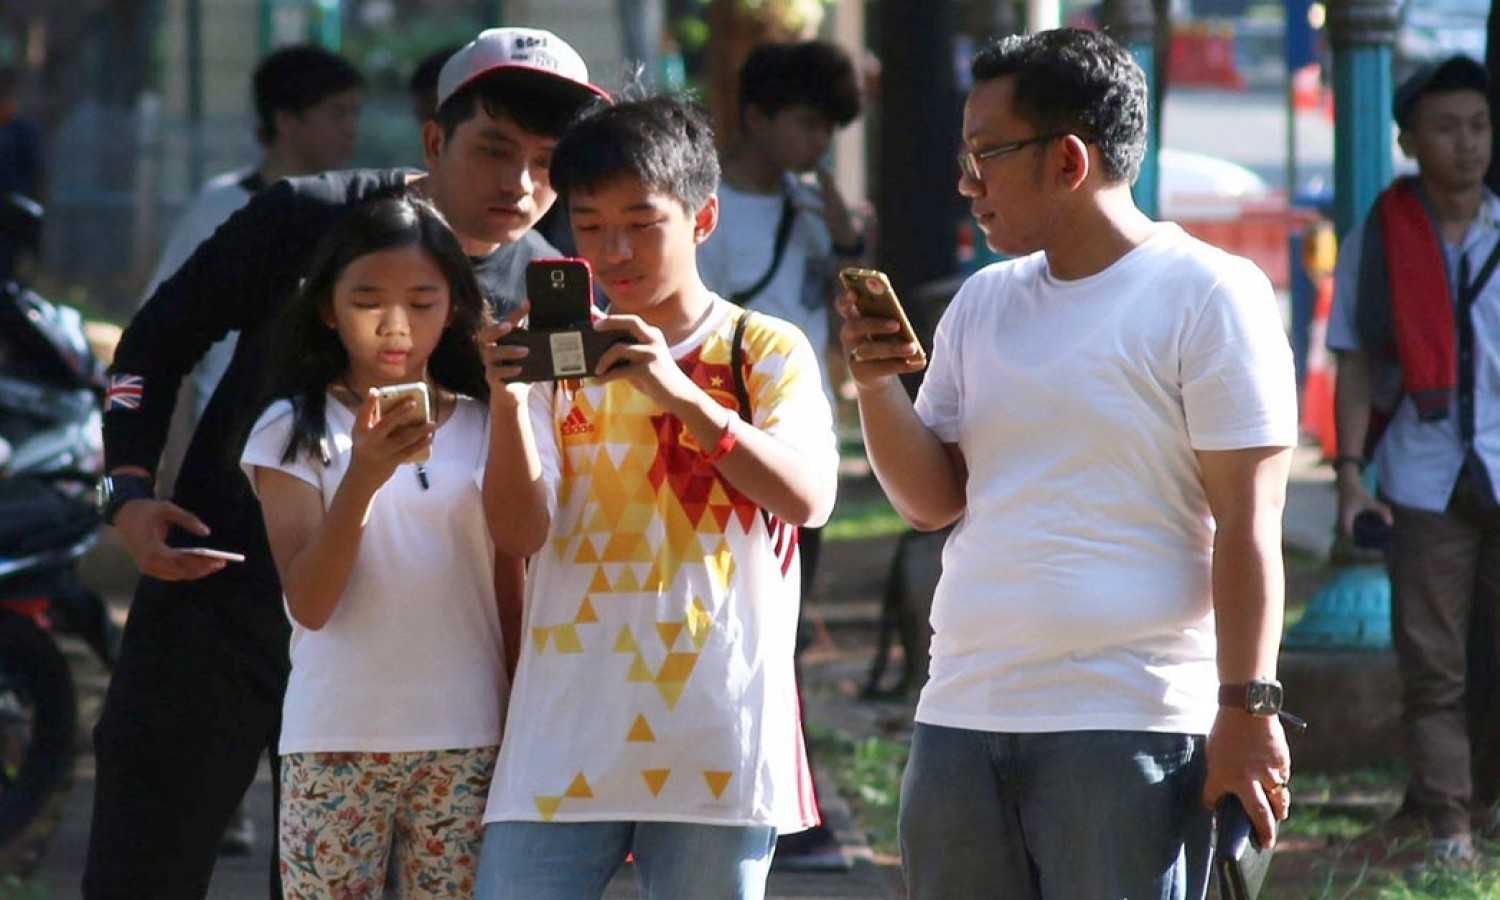 Survei: Orang Indonesia Senang Kirim Pulsa Ke Teman Dan Keluarga